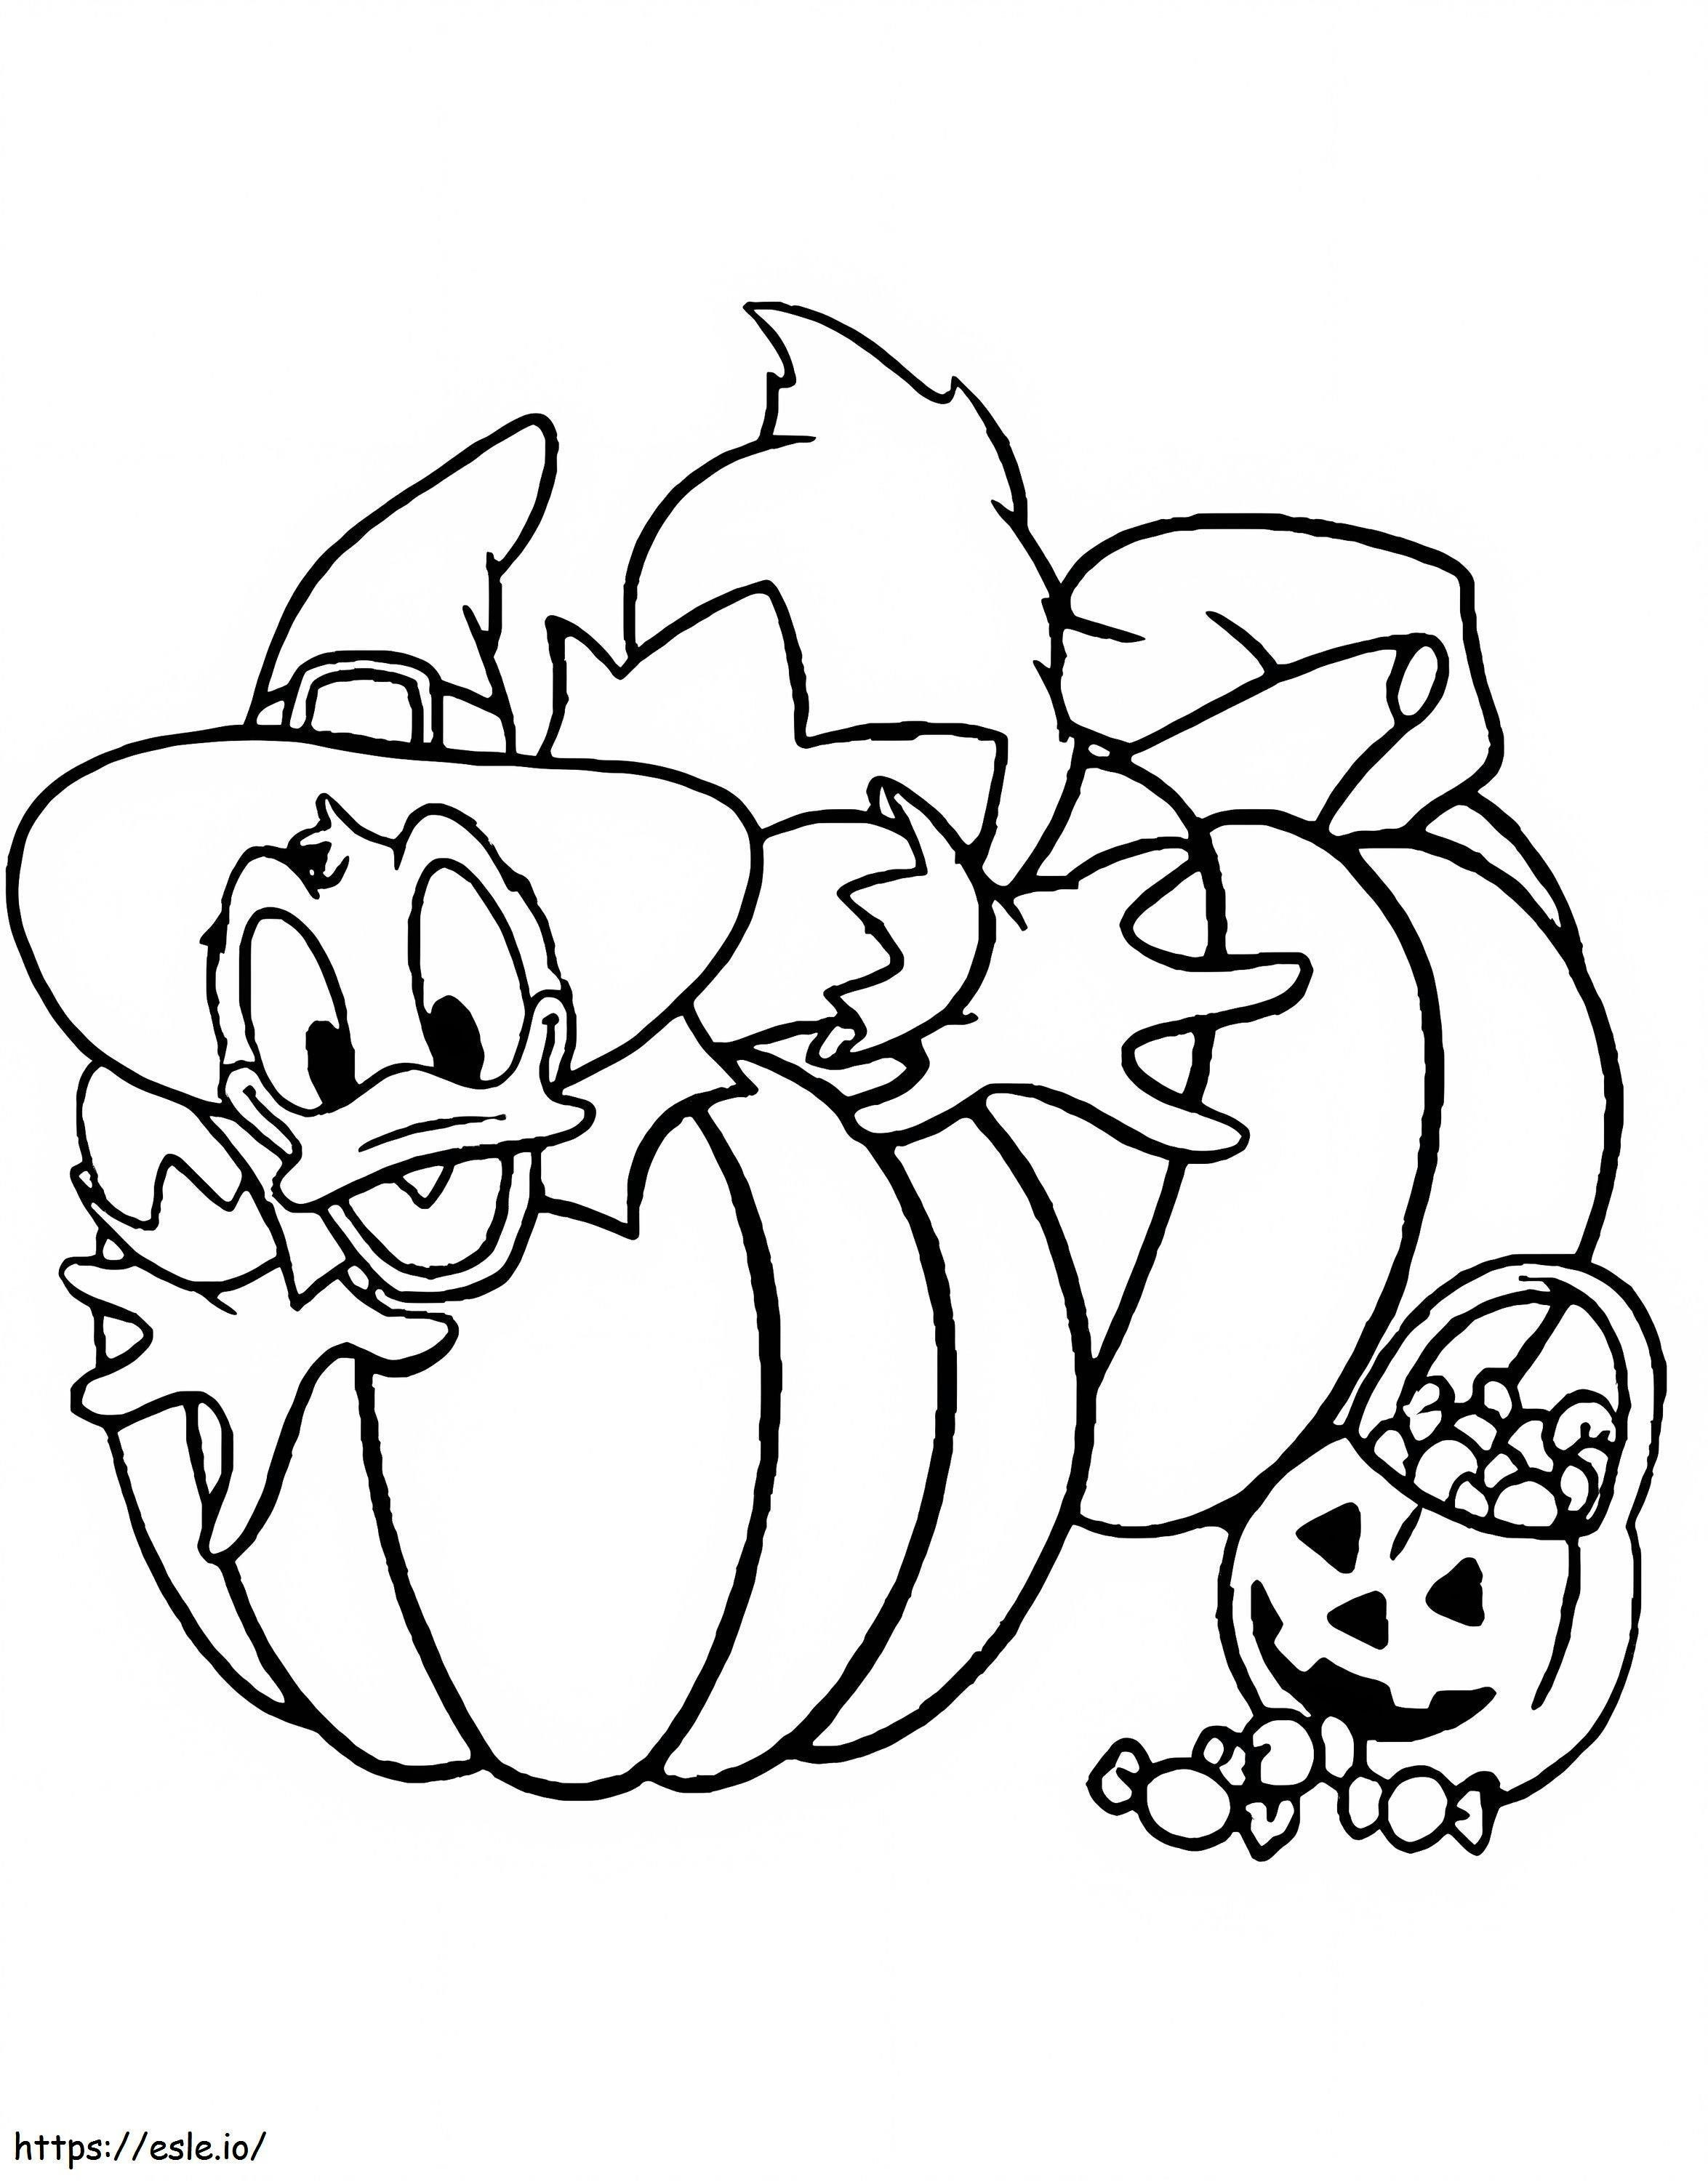 Pato Donald en Halloween para colorear